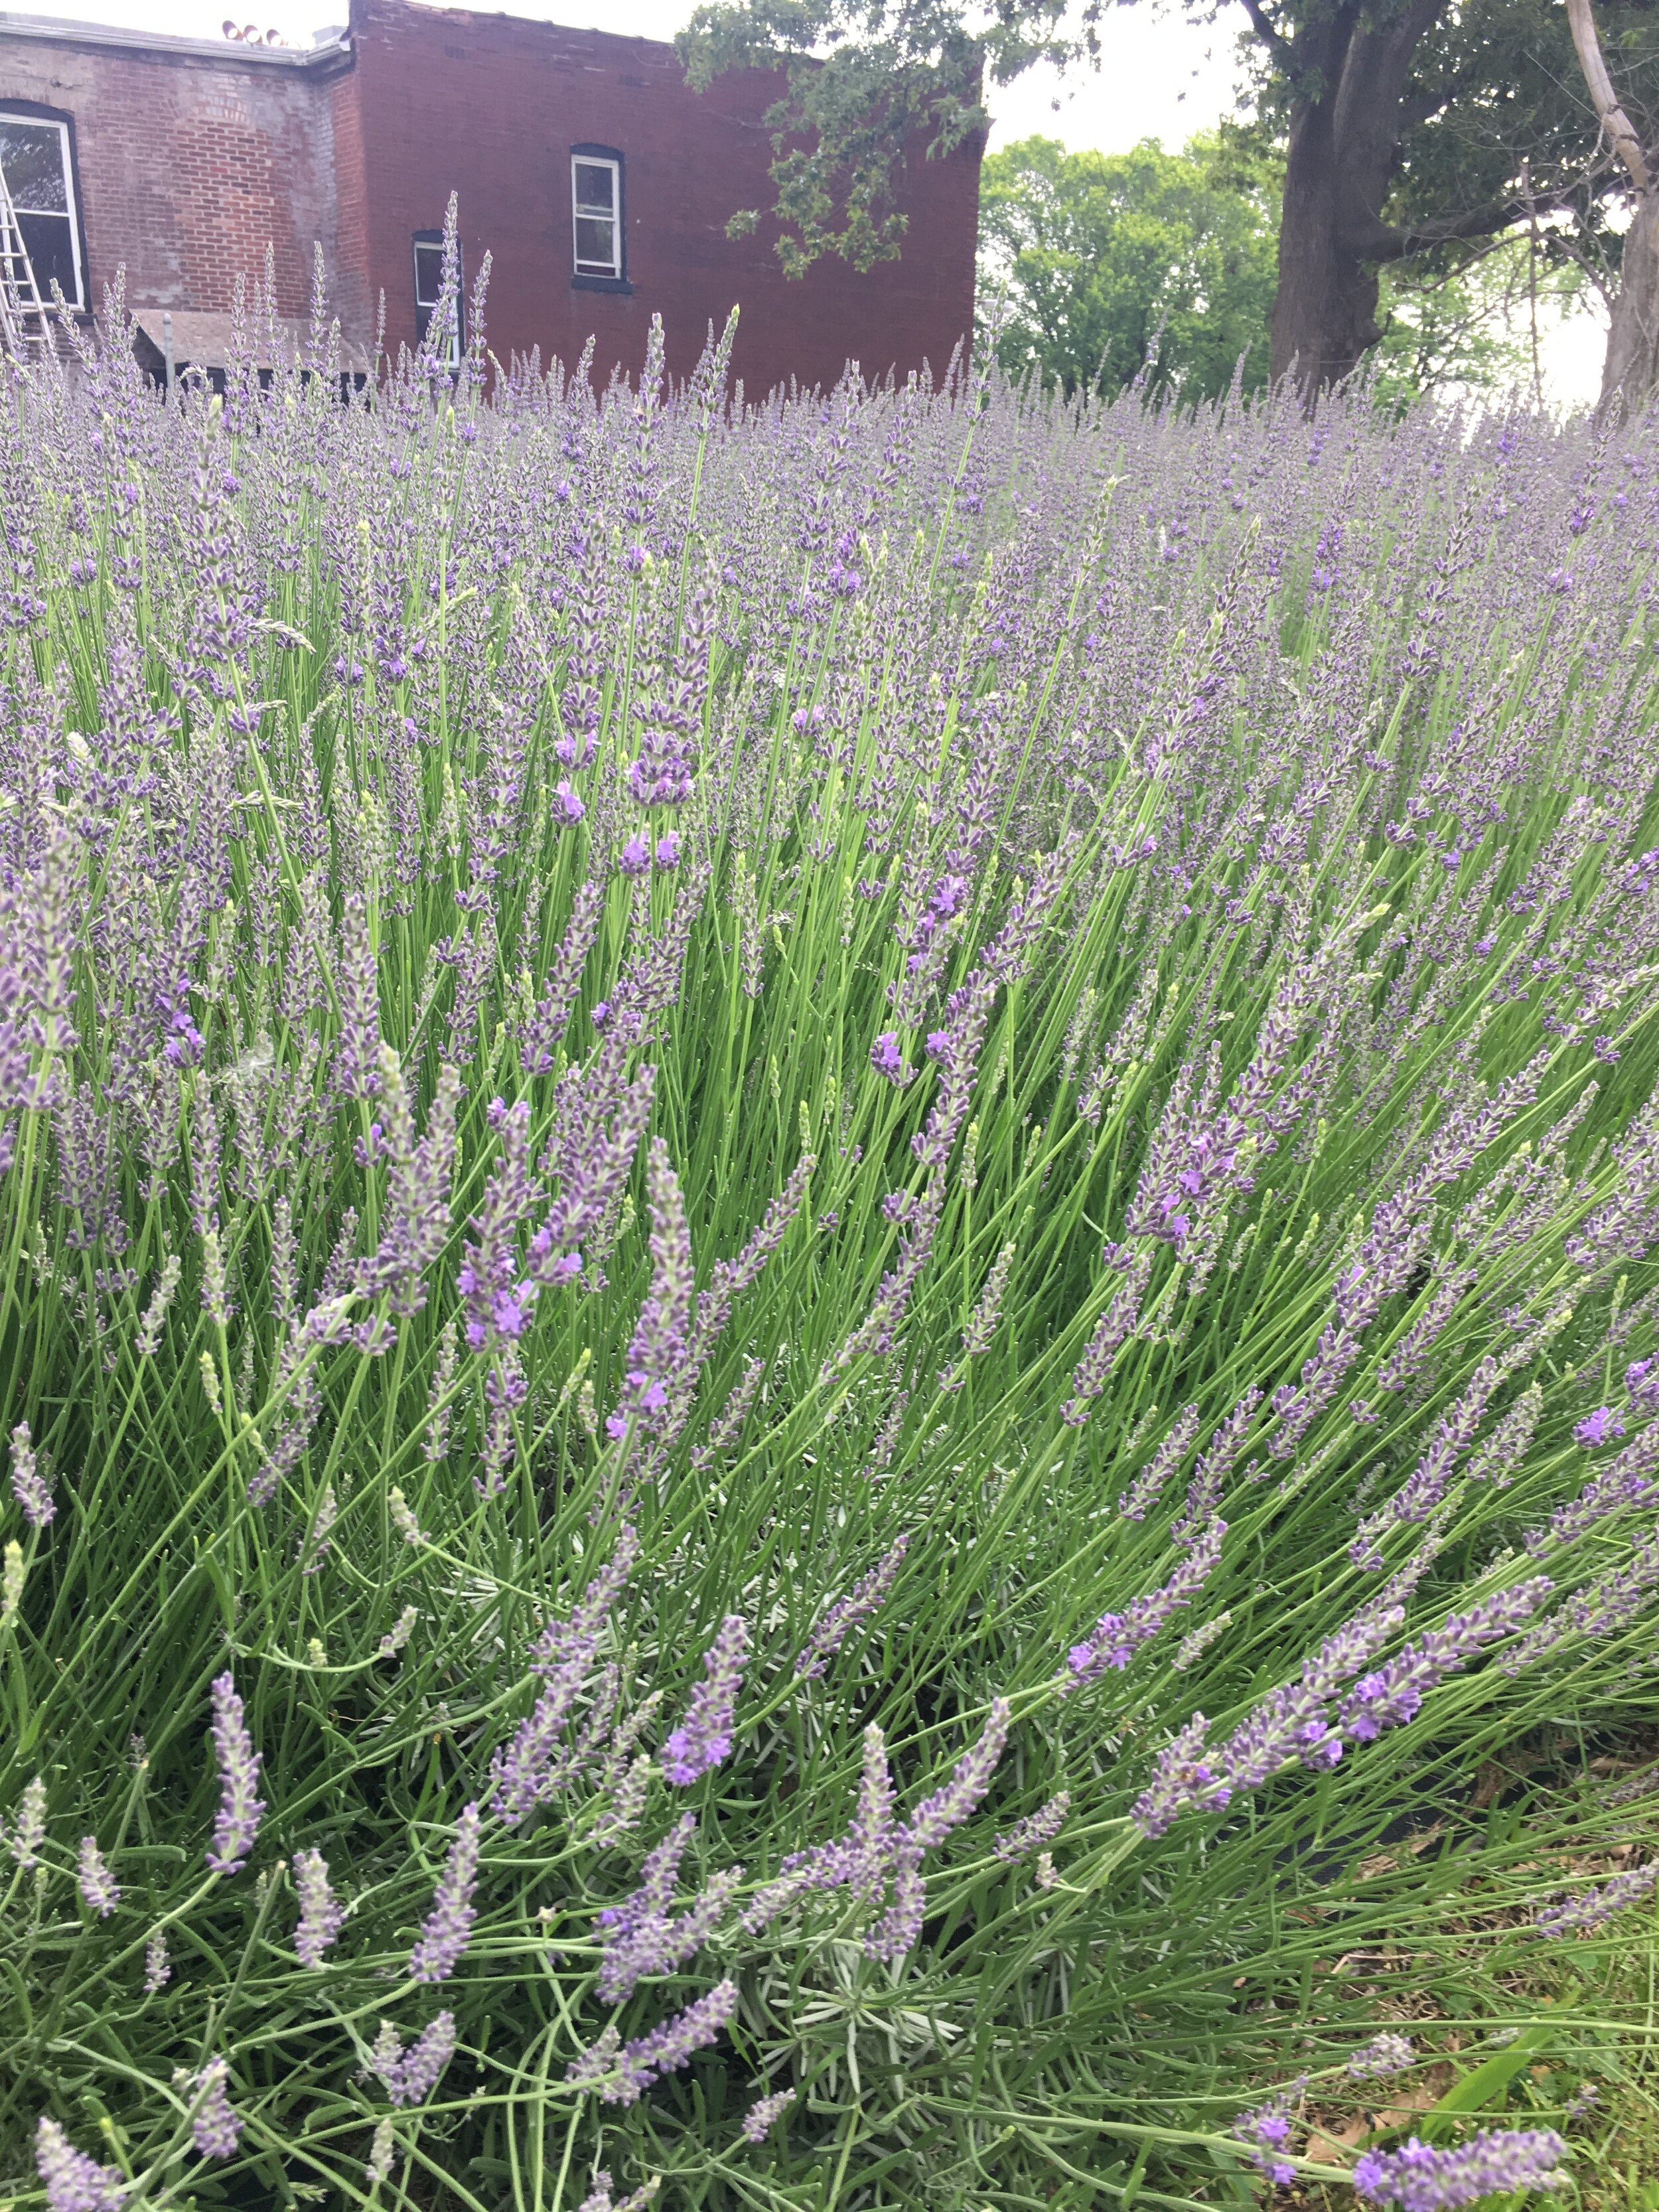 Urban lavender garden in Saint Louis Missouri.jpeg